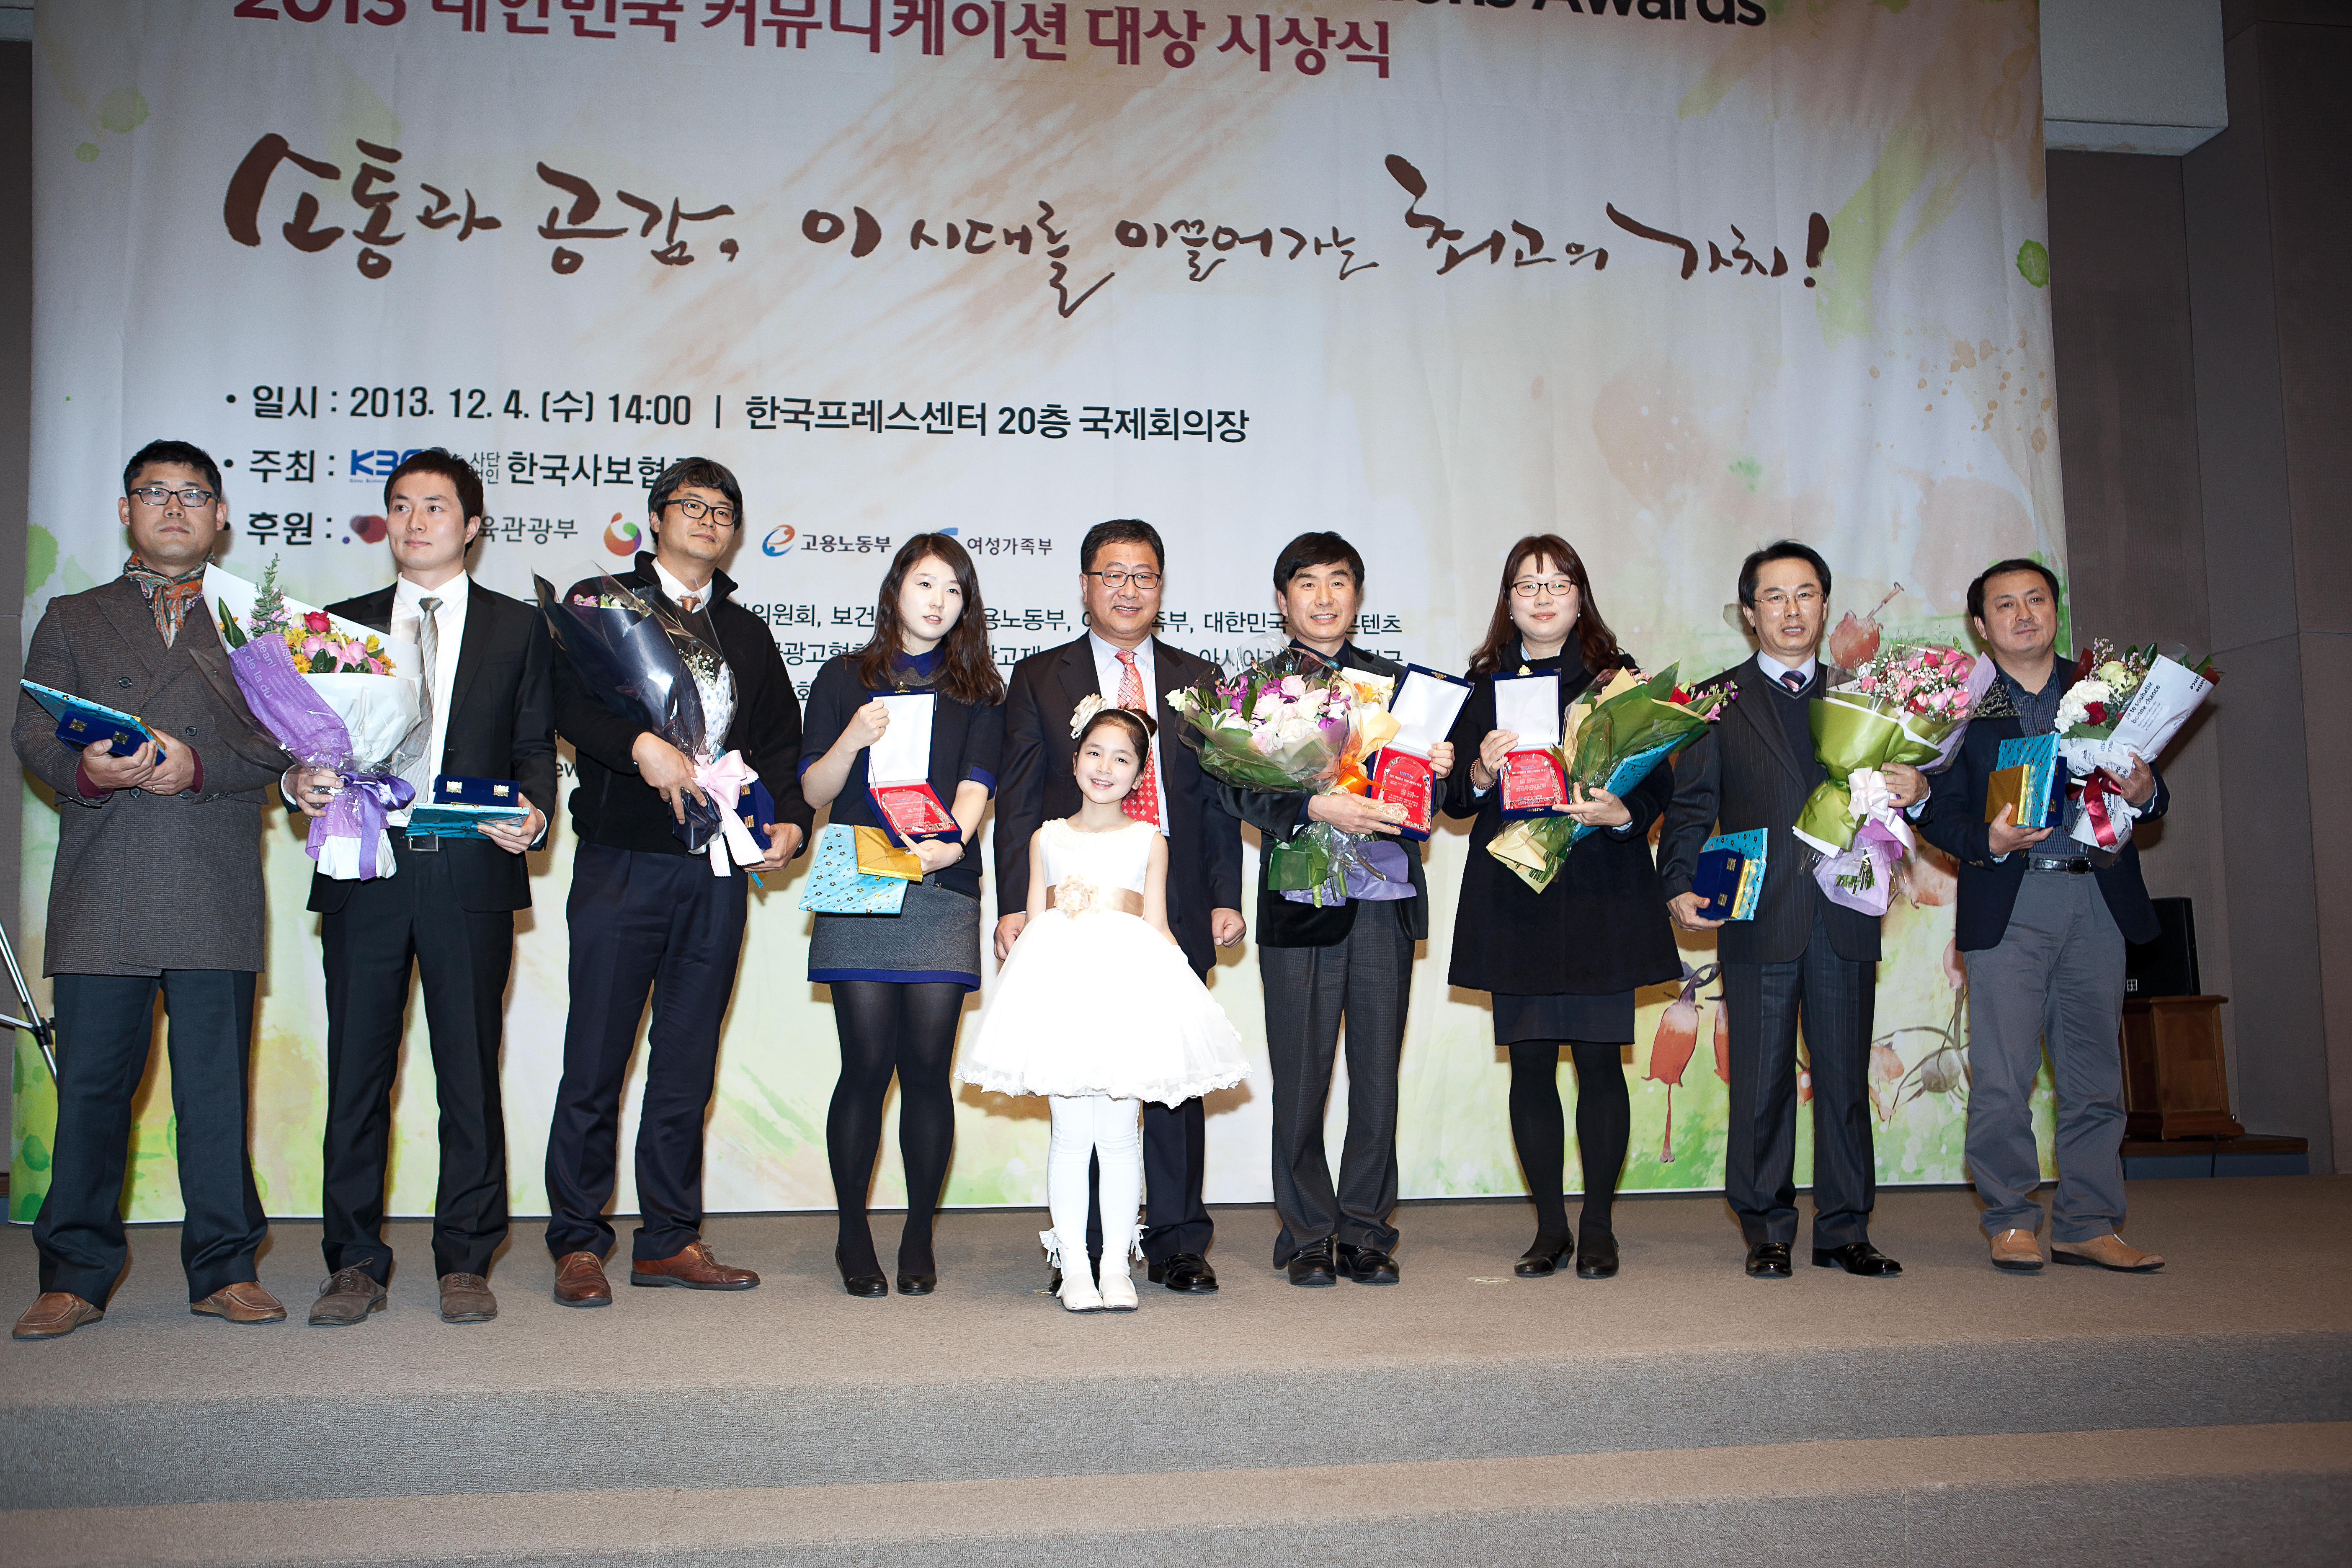 韩国制纸荣获2013交流大奖策划奖和优秀宣传物奖